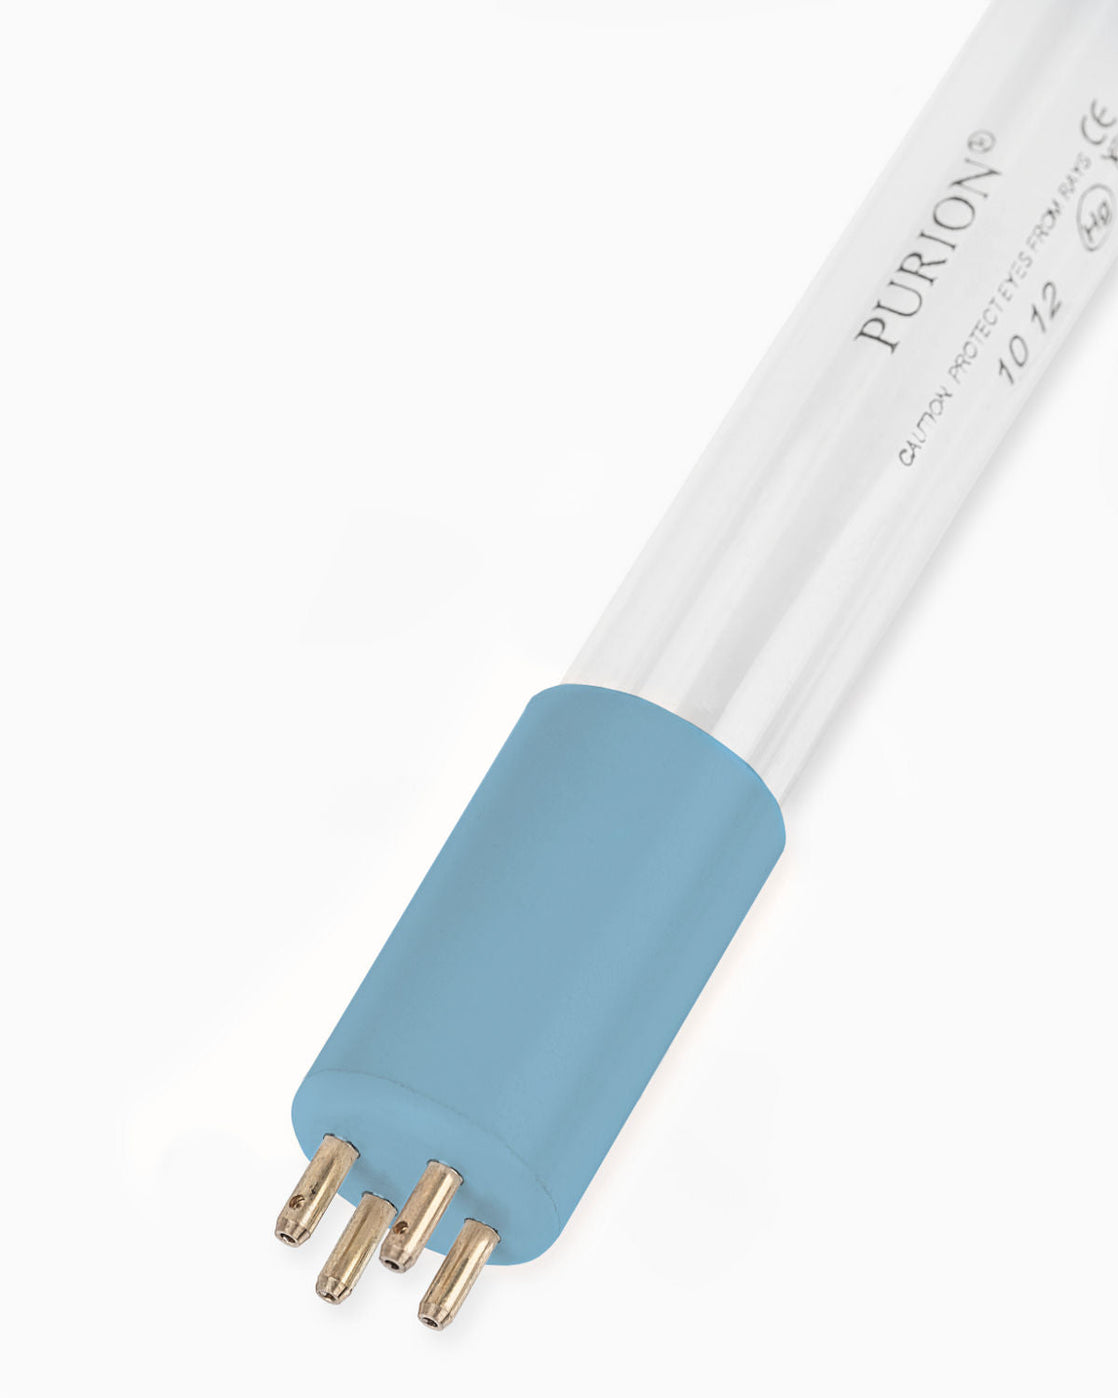 Eine PURION 400 12 V/24 V DC OTC-Blaulichtröhre leuchtet vor einem weißen Hintergrund, liefert eine UV-C-Lampe mit 10 W und hilft, entkeimtes Trinkwasser zu erzeugen. (Markenname: PURION GmbH)